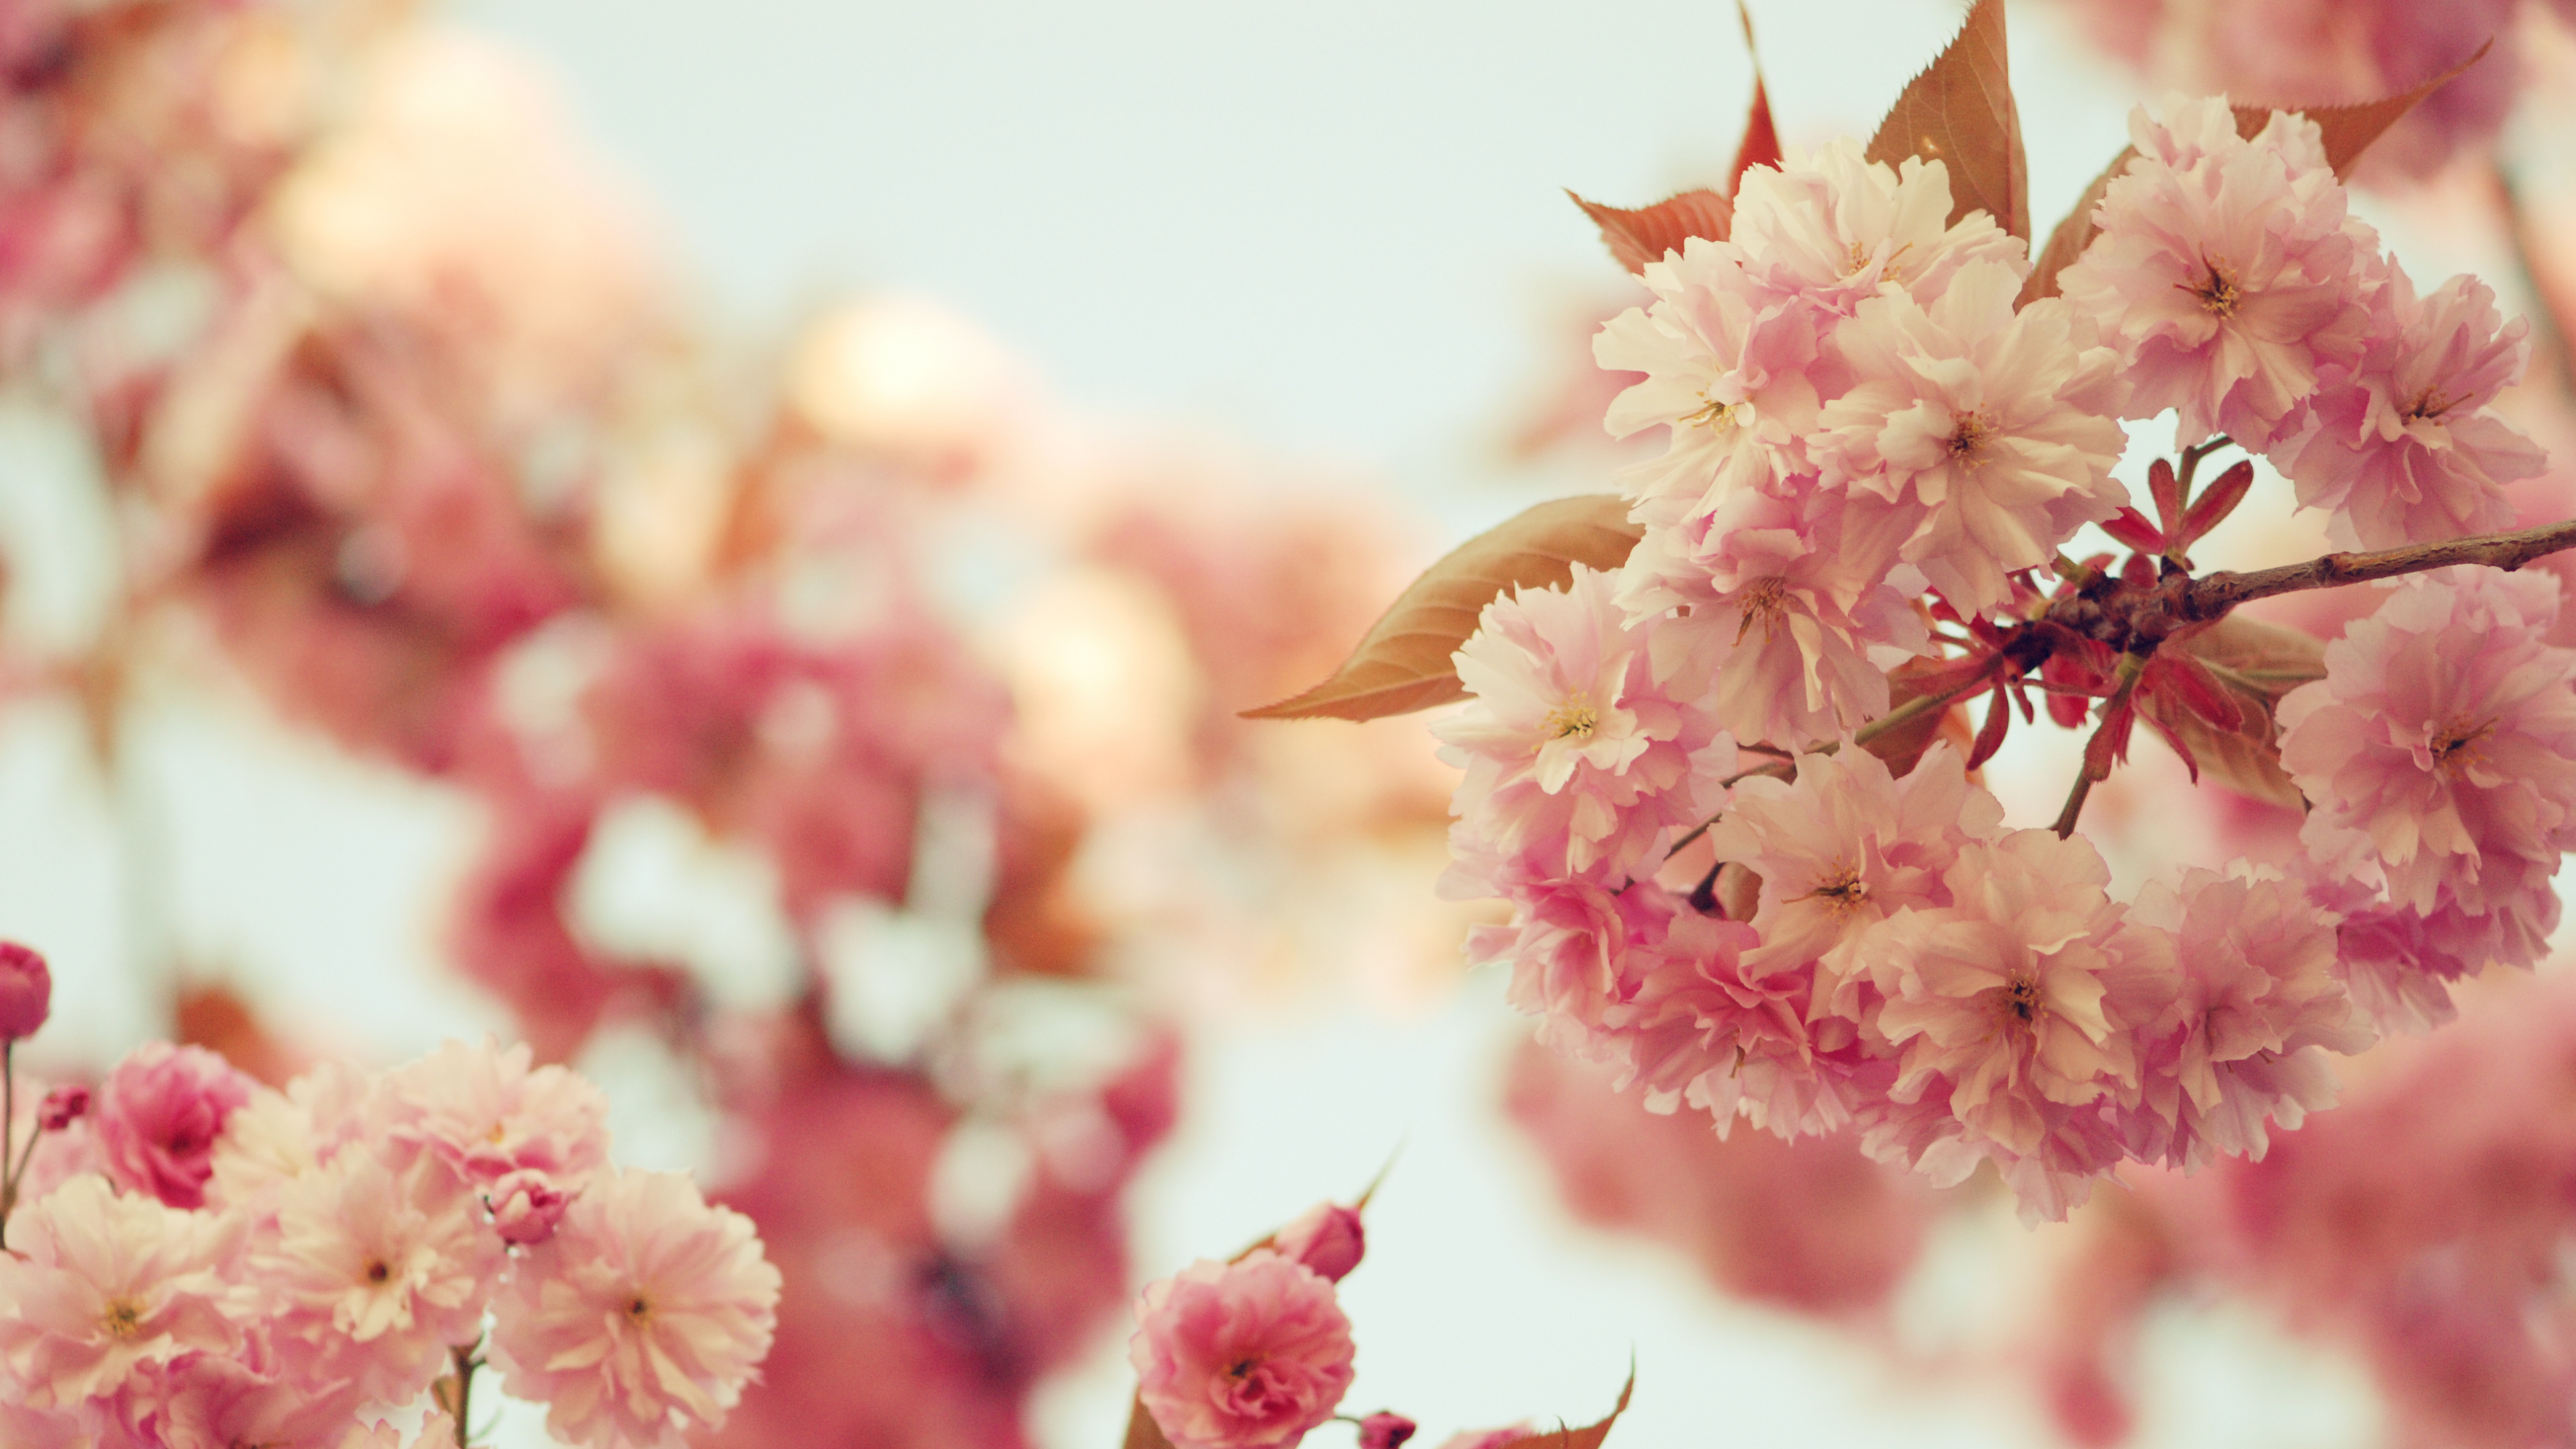 粉红色, 开花, 弹簧, 樱花, 梅梅 壁纸 3840x2160 允许